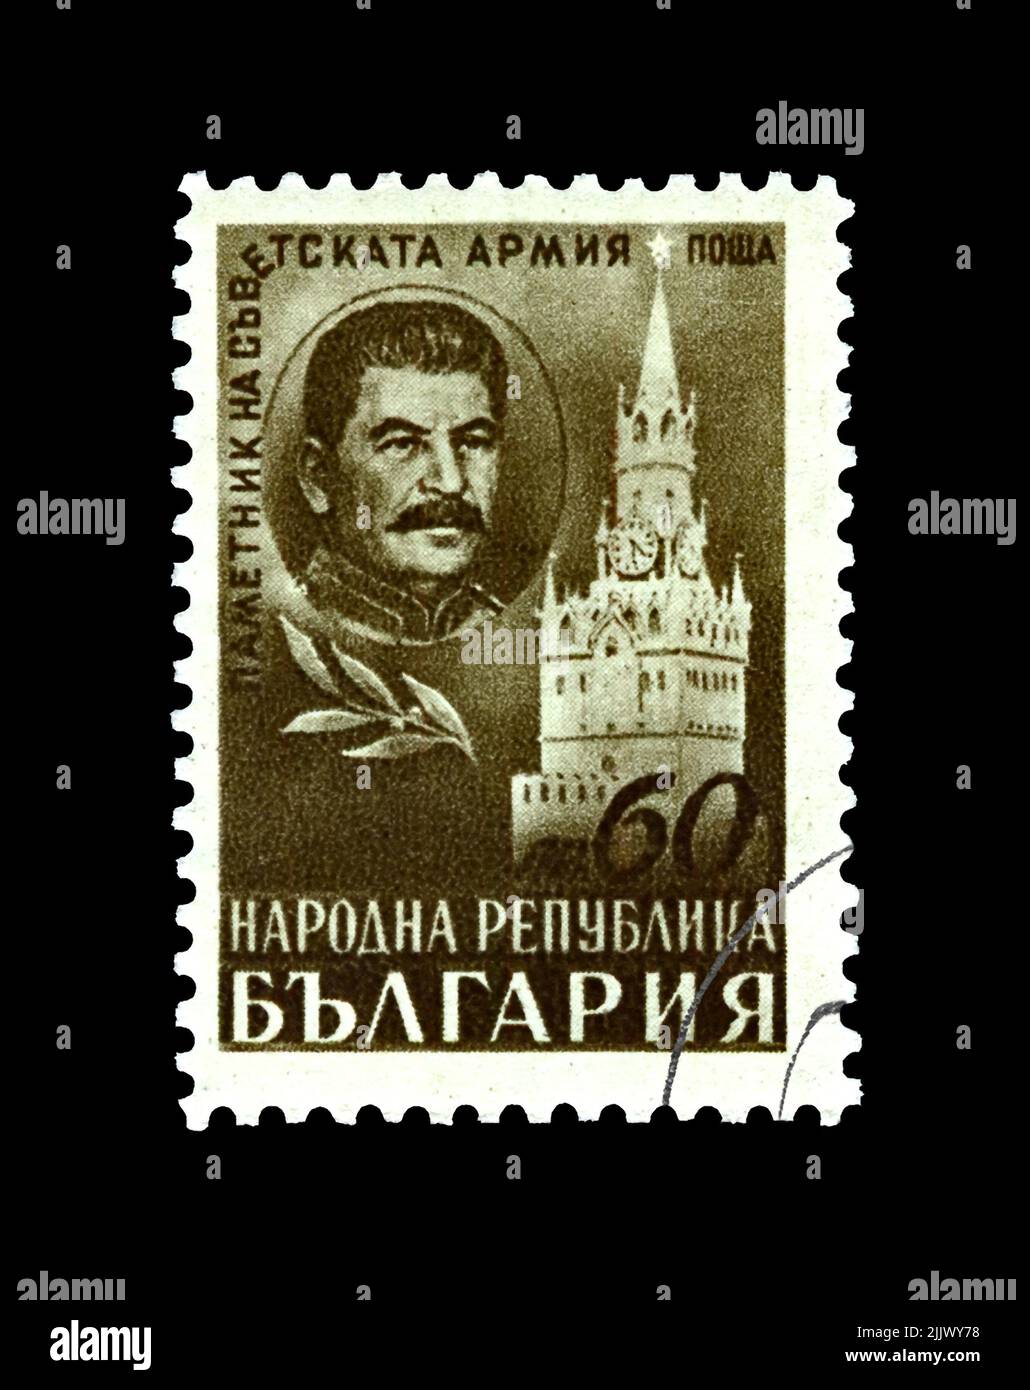 Tour Spasski et Joseph Staline, célèbre dirigeant politique soviétique, vers 1948. Le mémorial de l'armée soviétique. Timbre postal vintage de Bulgarie isolé Banque D'Images